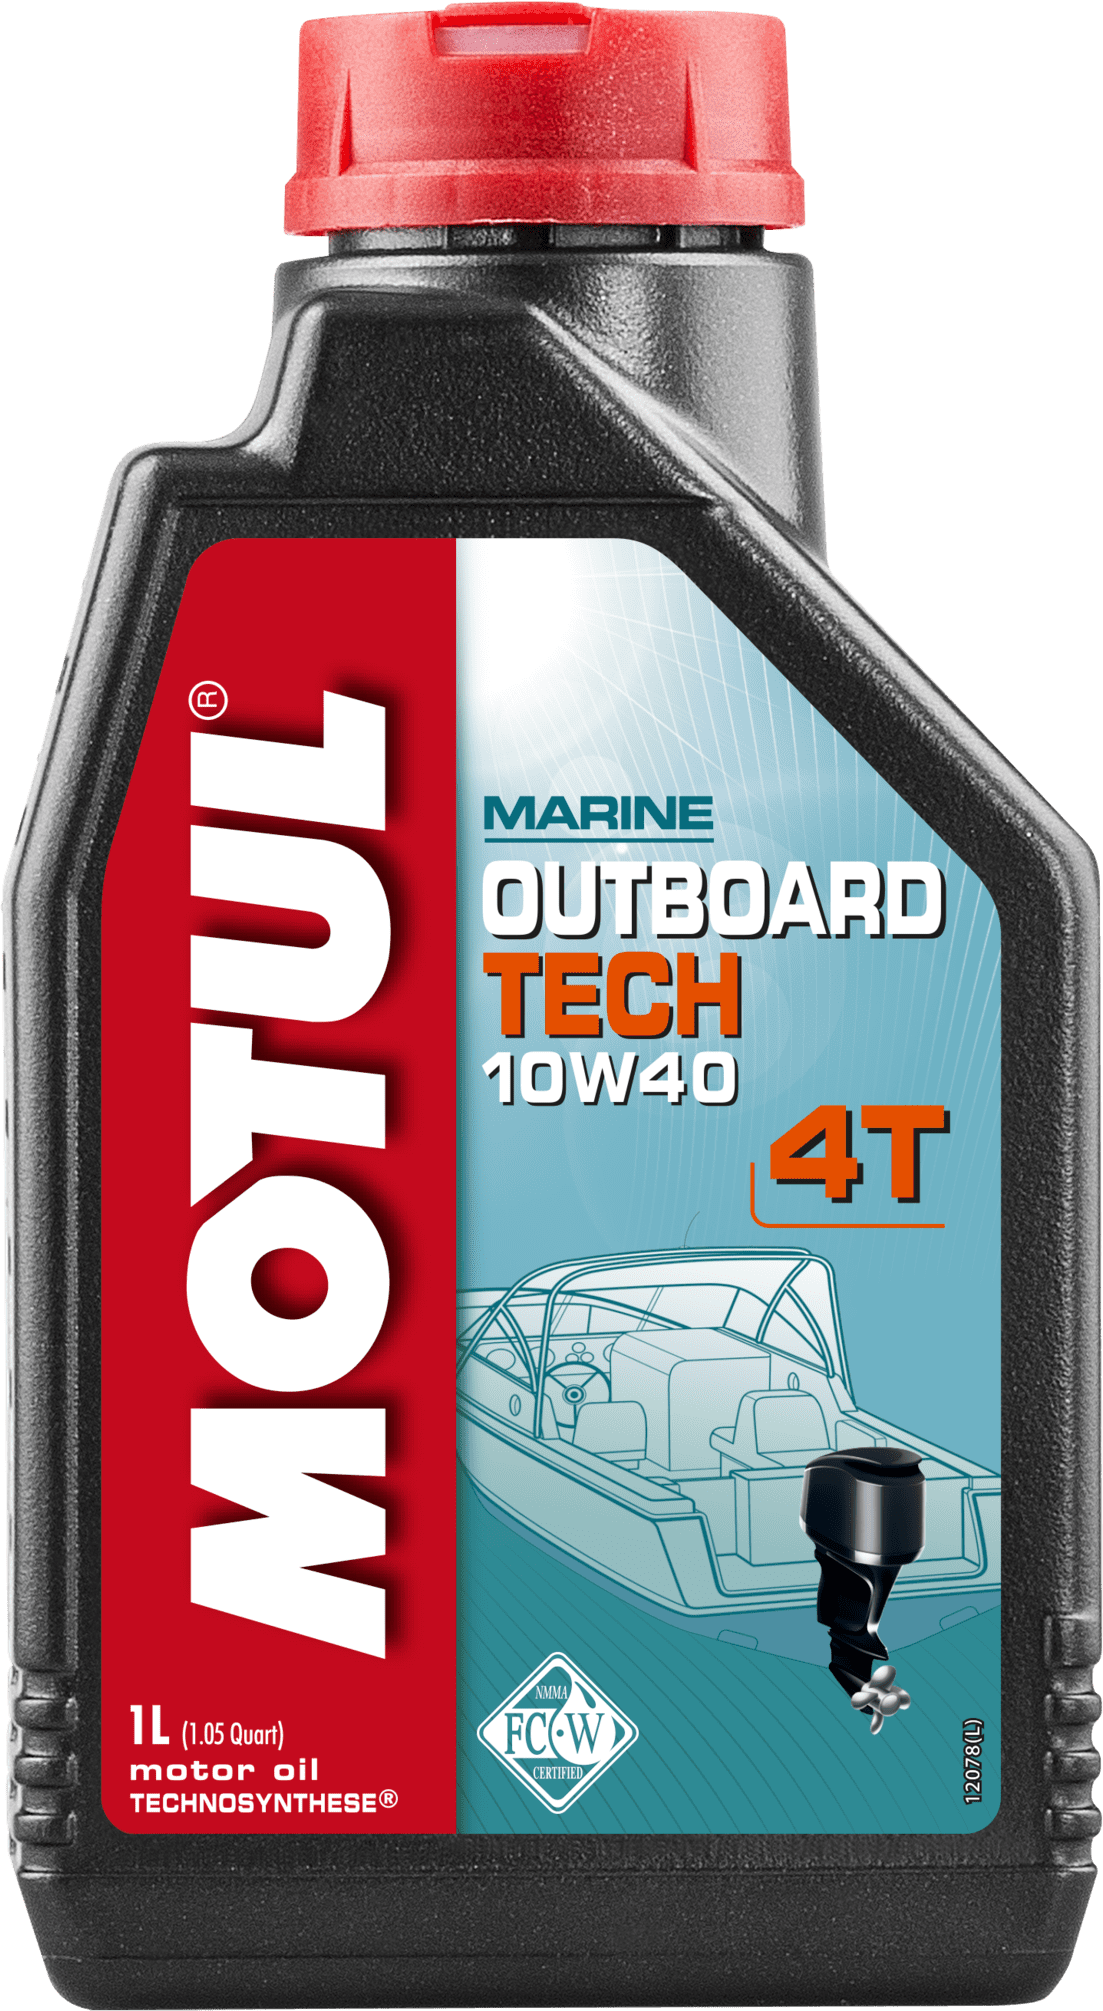 106397-1 Lubrifiant Technosynthese® Pour moteurs hors-bord 4T essence exigeant une huile NMMA FC-W.